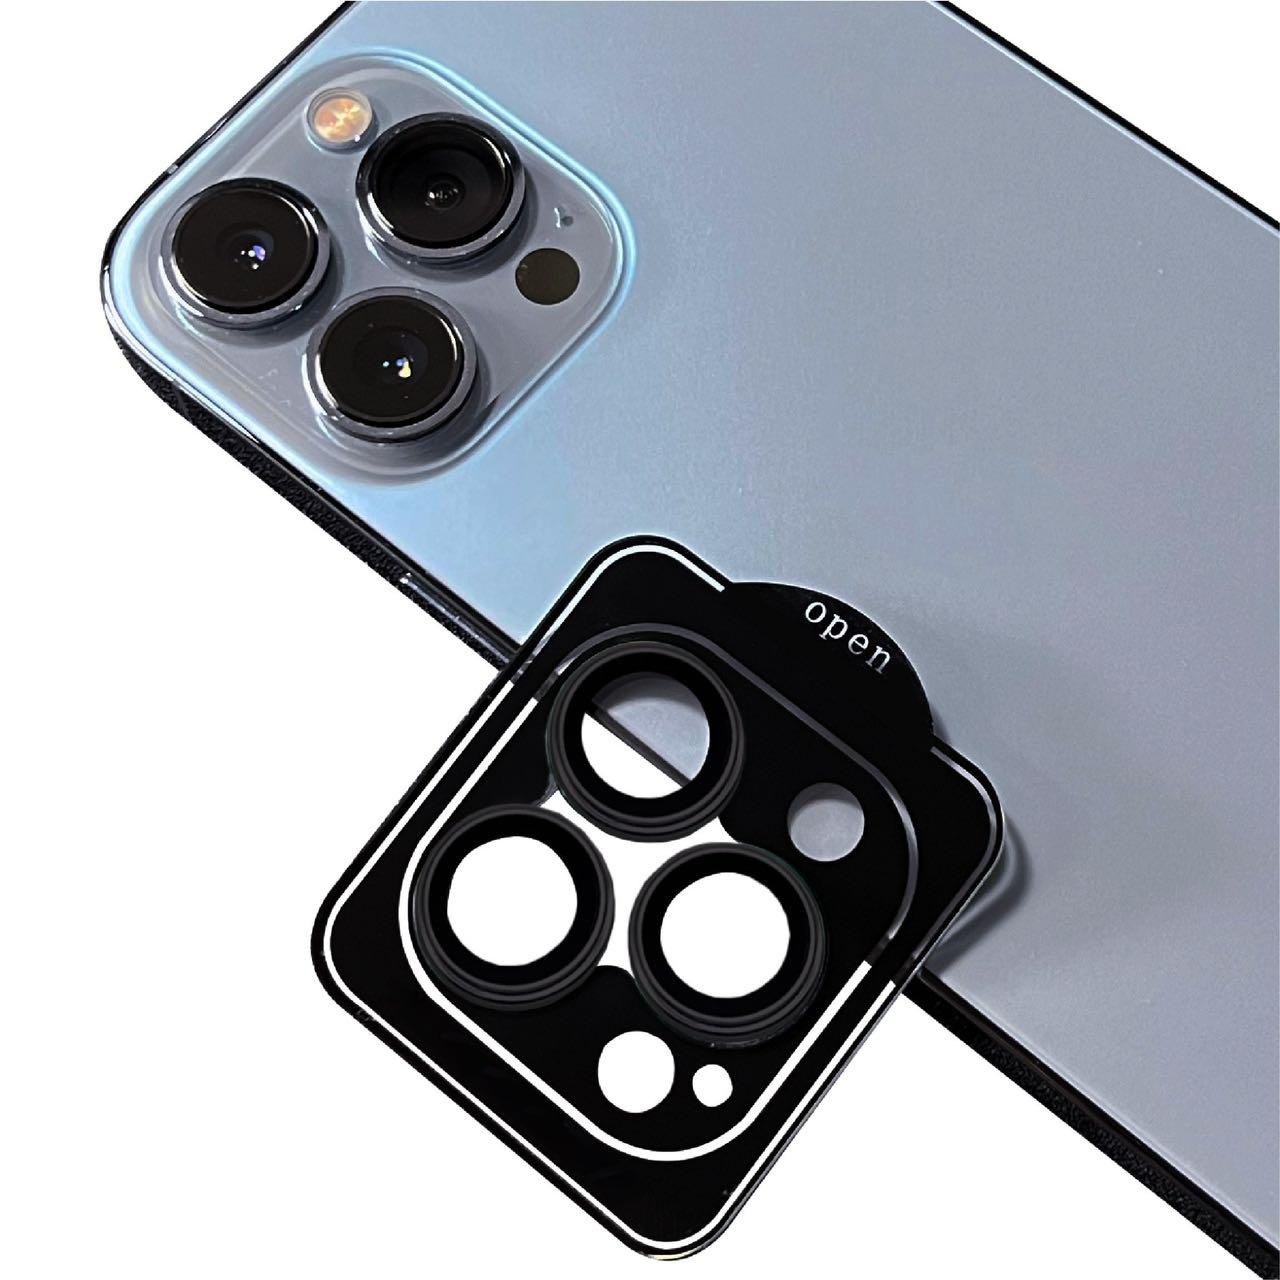 iPhone 12 Pro Max Uyumlu Safir Kamera Koruyucu Lens